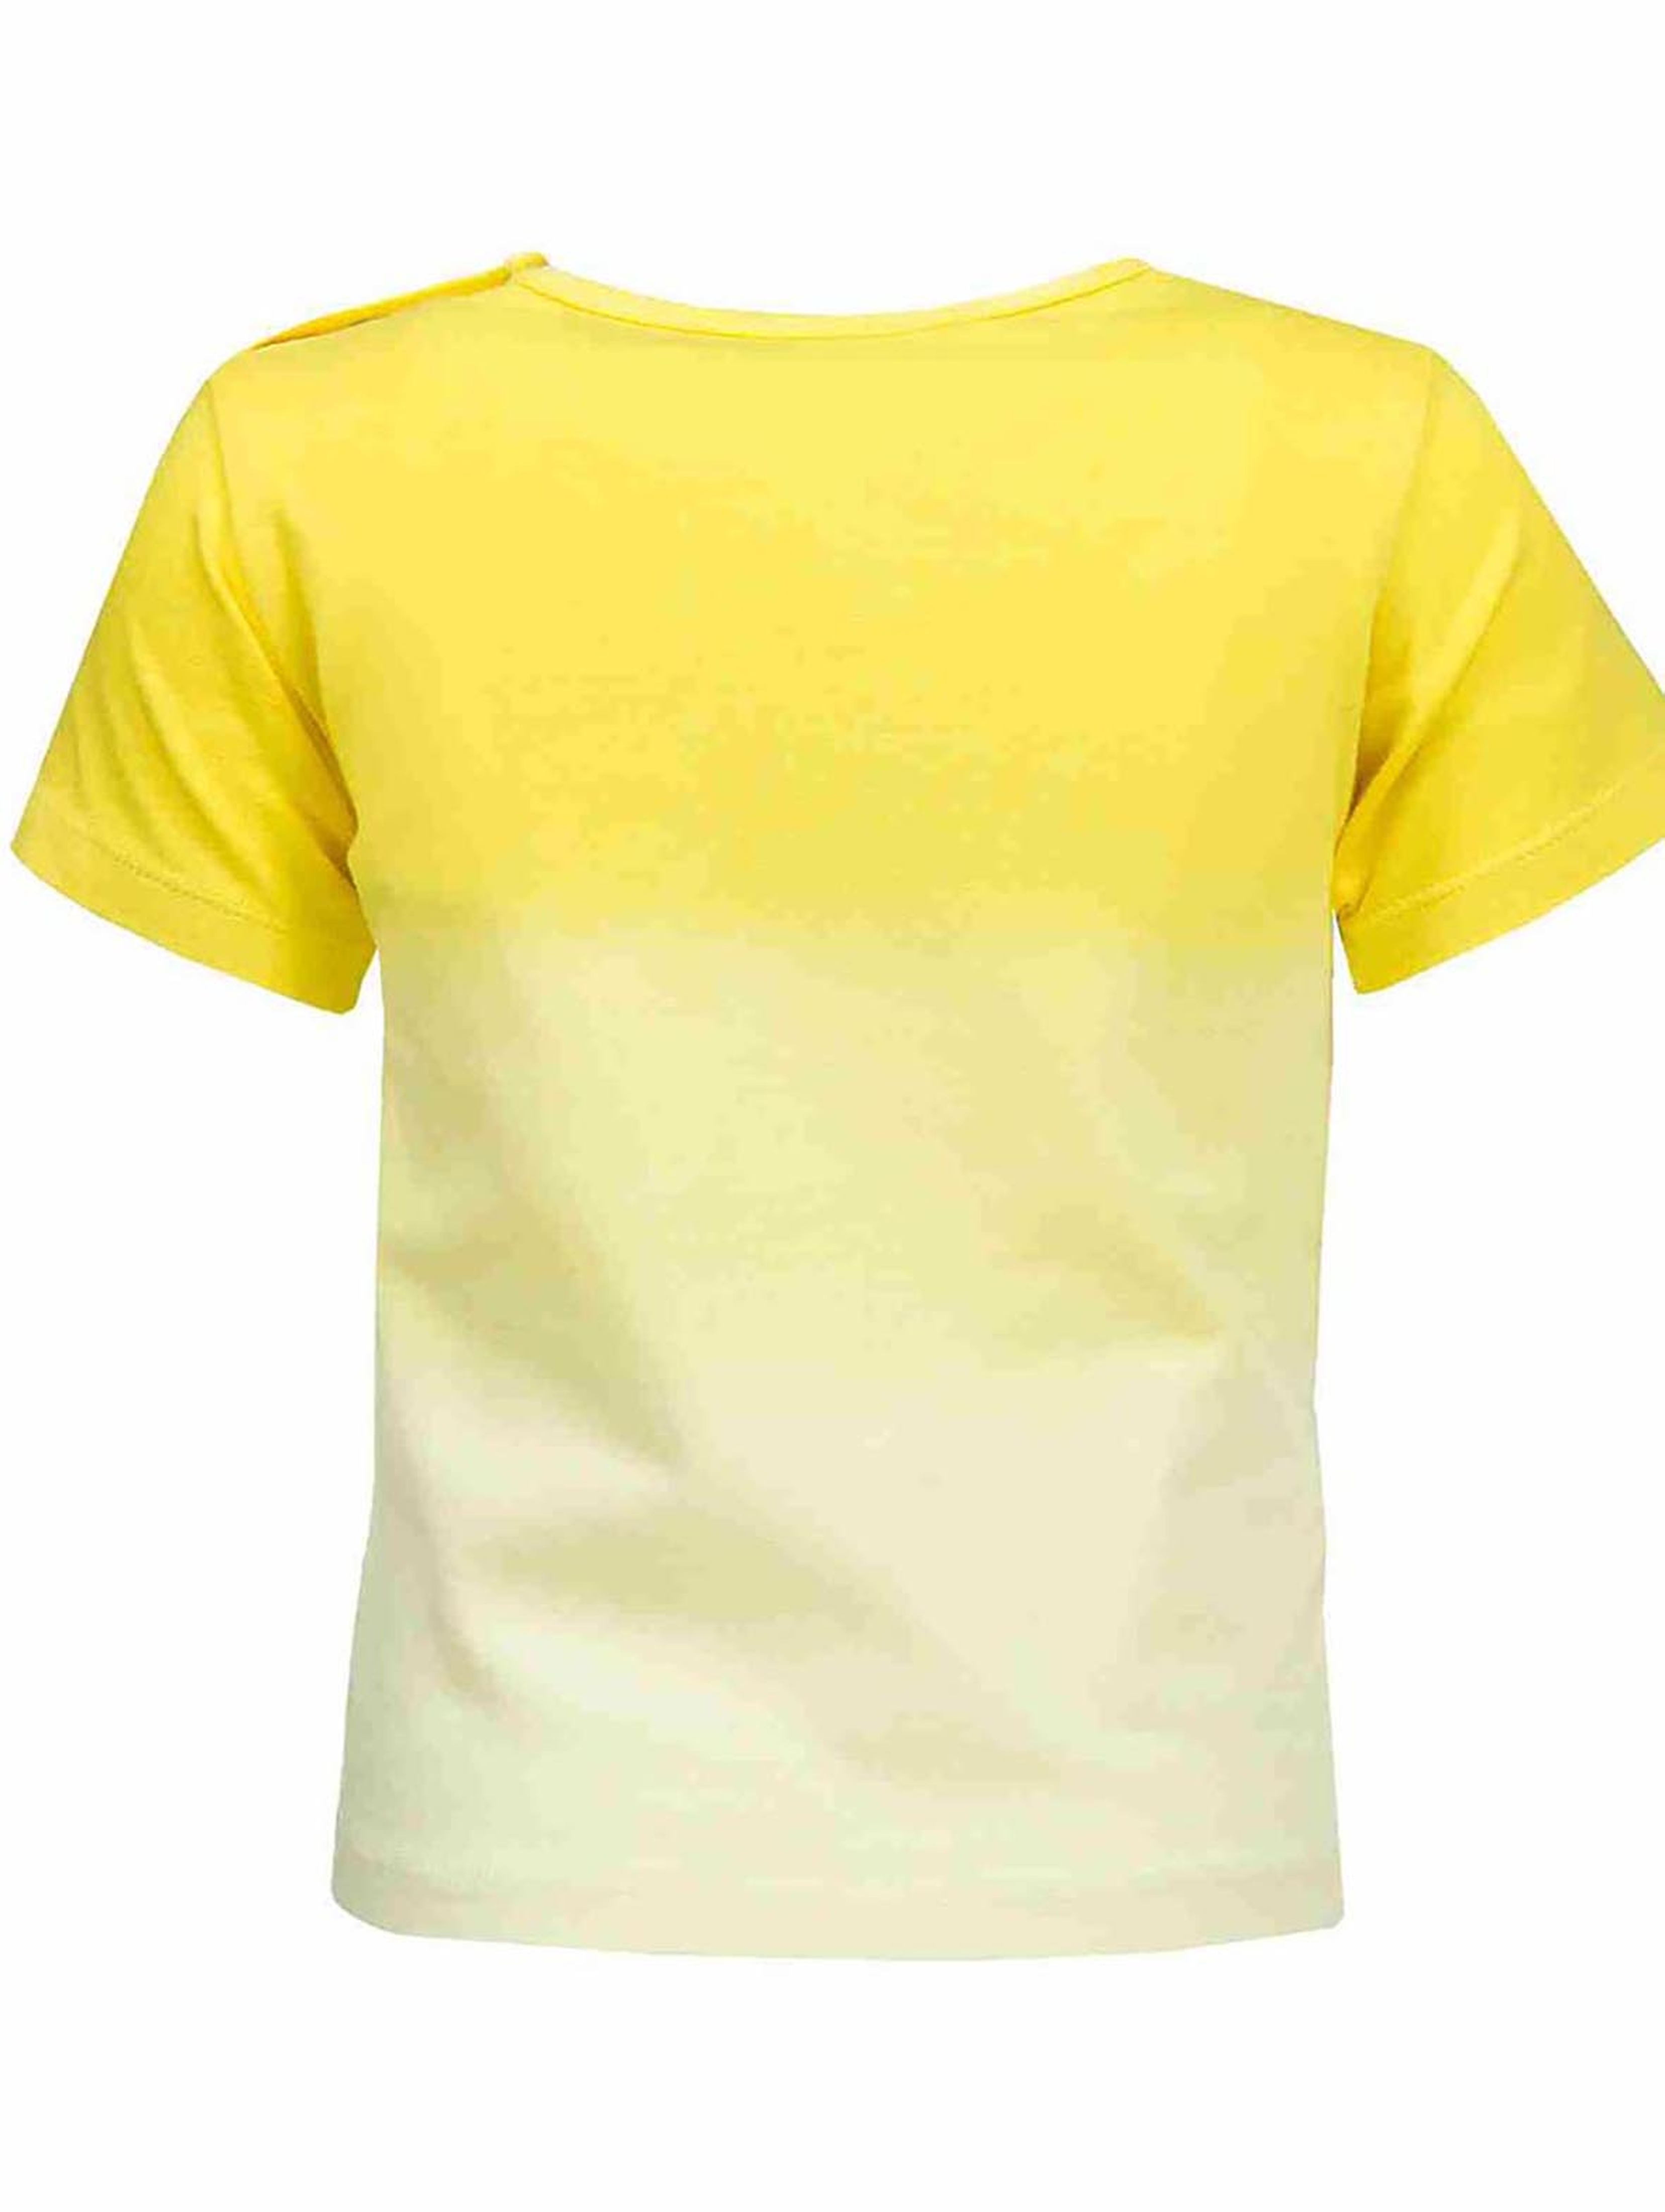 T-shirt chłopięcy, żółty, Take a Summer Break, Lief